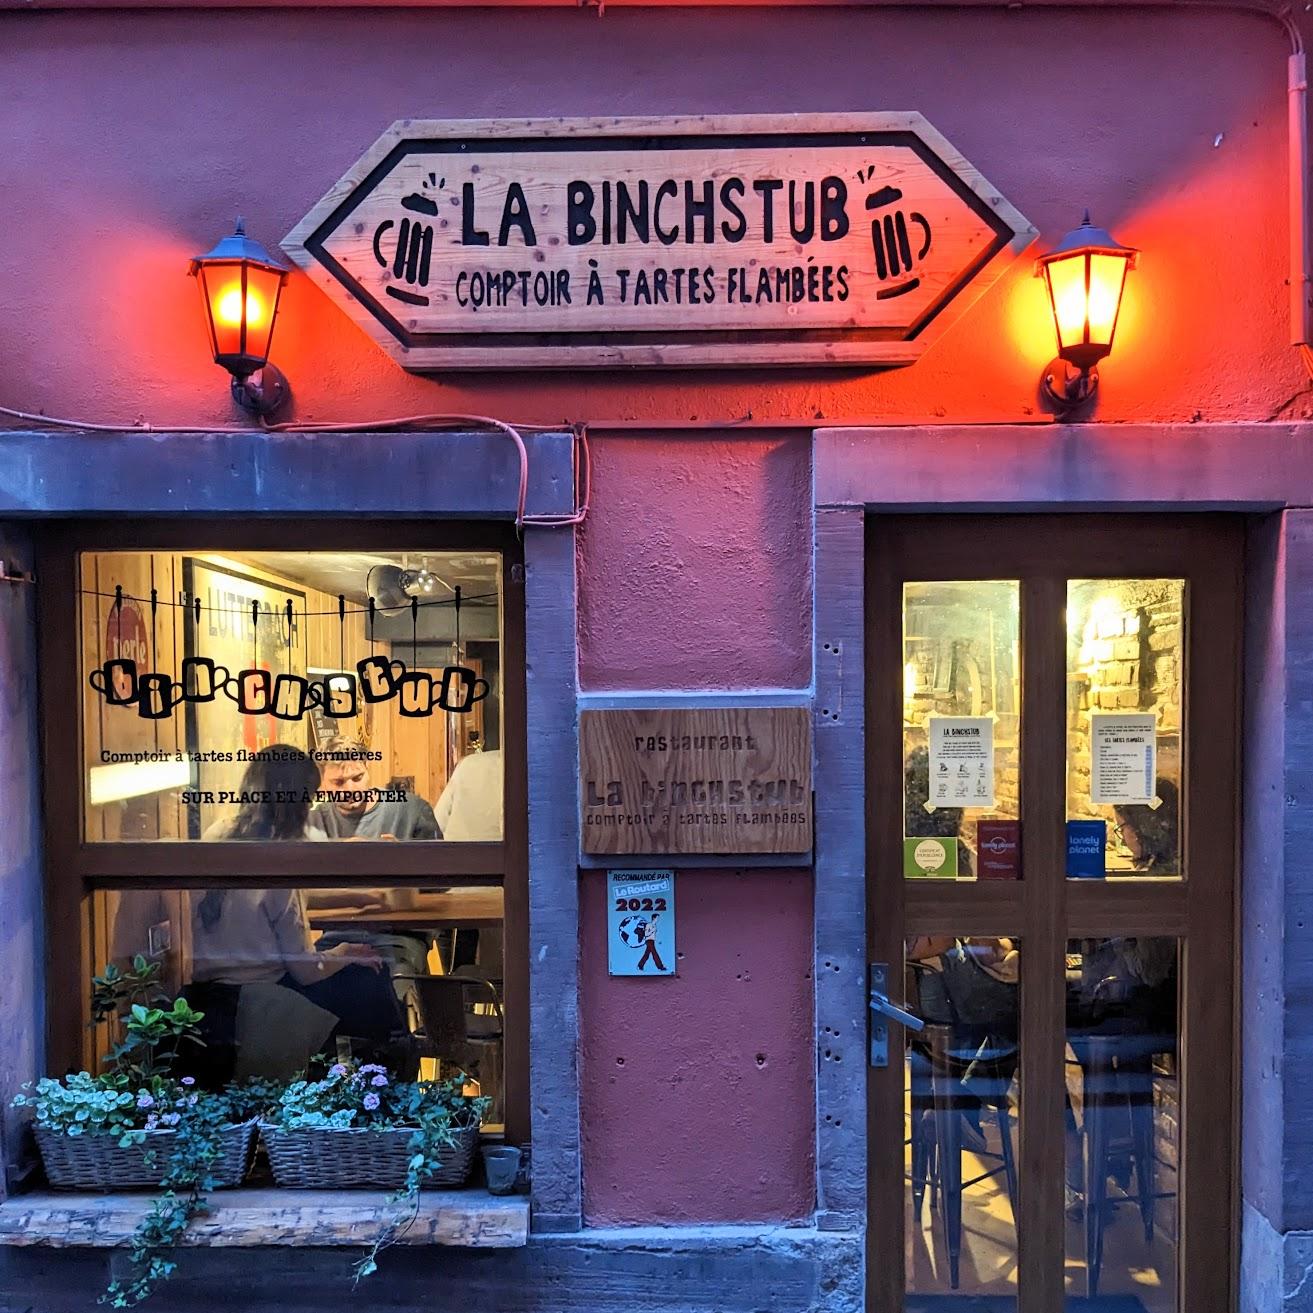 Restaurant "Binchstub Restaurant" in Strasbourg